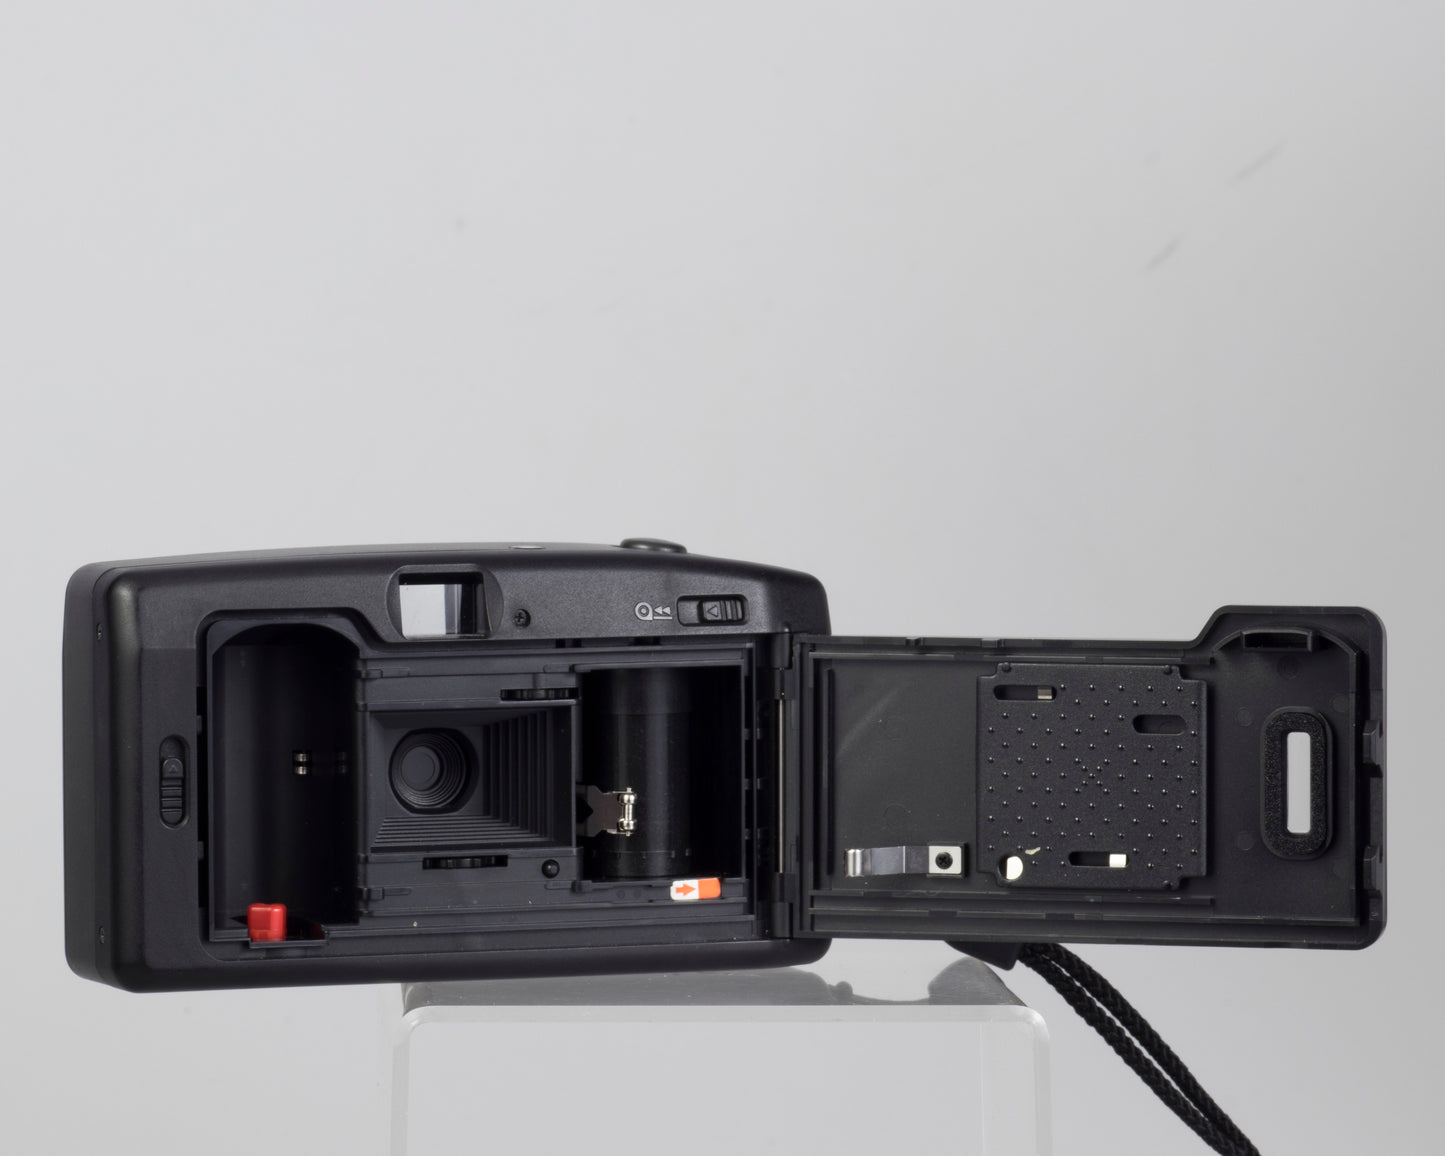 Minolta F10 35mm film camera (serial 34834132)